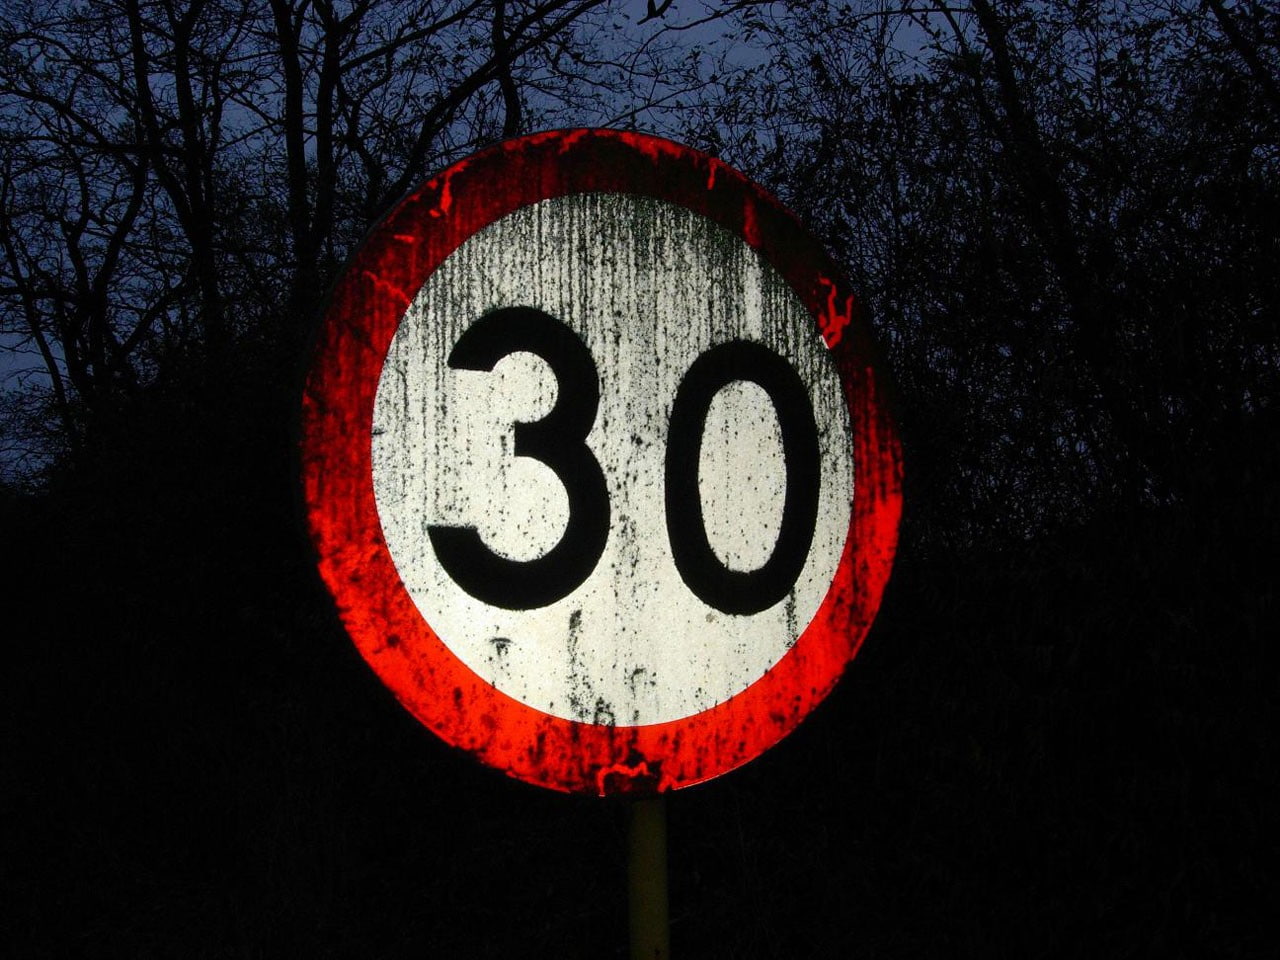 speed-limit, sign, grunge, dark, forest, red, communication